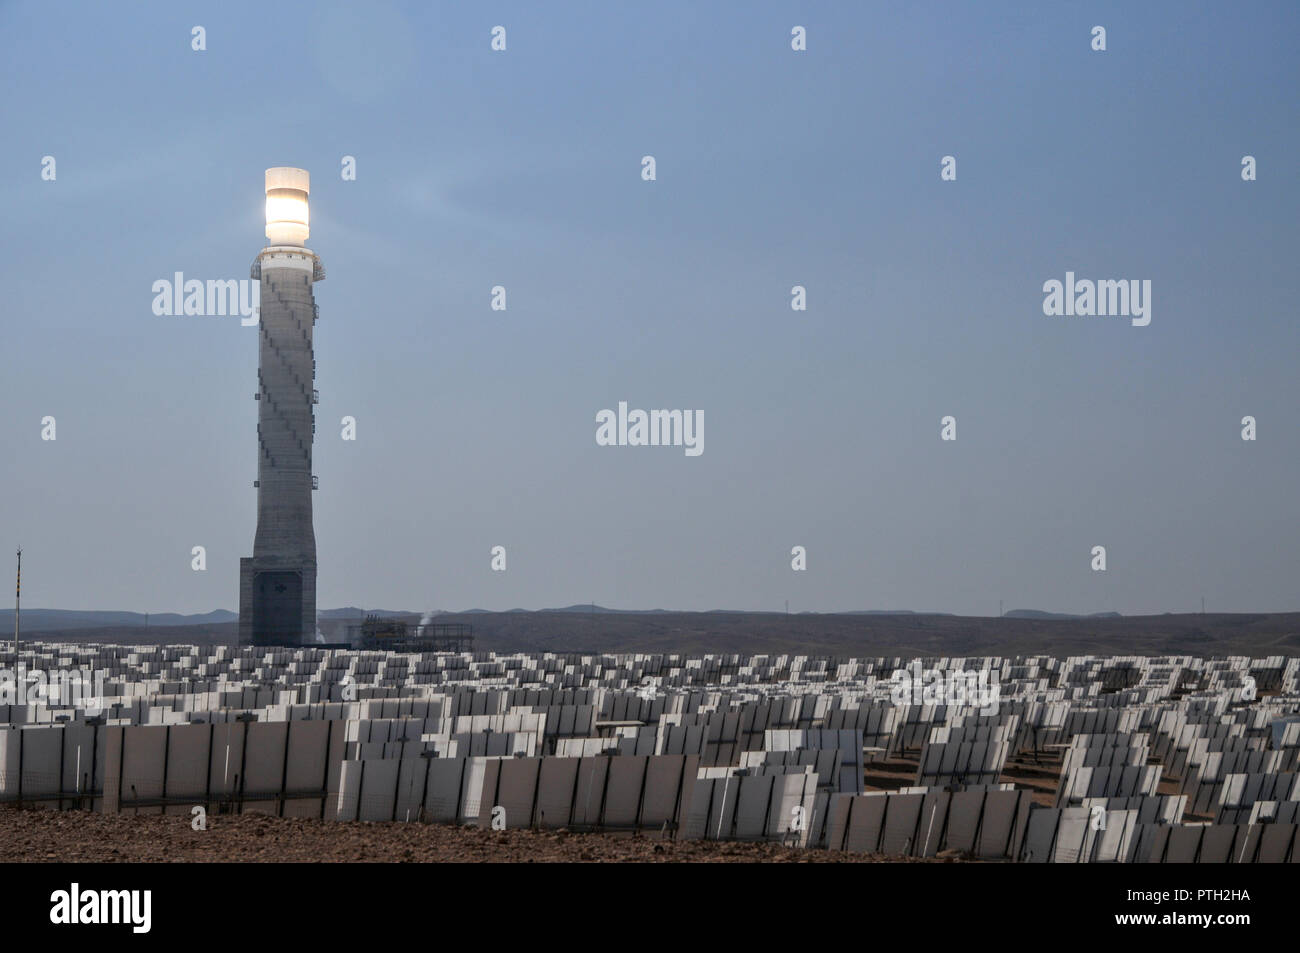 La energía solar Ashalim Station es una estación de energía solar térmica en el desierto de Negev, cerca del Kibbutz de Ashalim, en Israel. La estación proporcionará Foto de stock